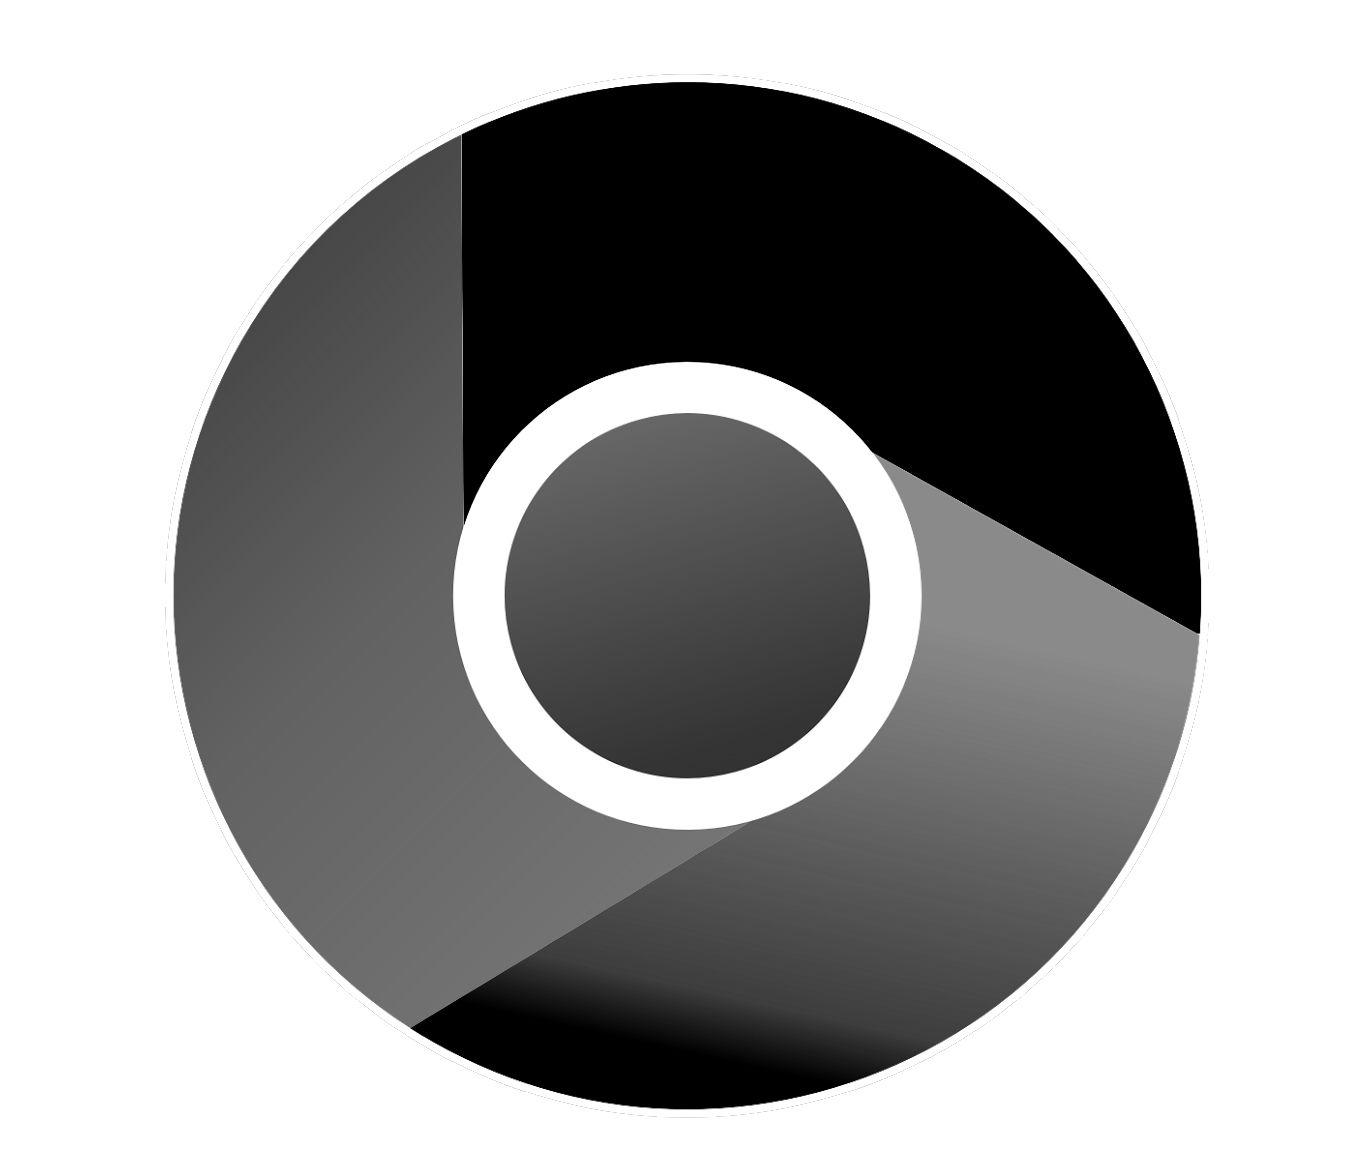 Chrome Logo - Chrome Logo, Chrome Symbol, Meaning, History and Evolution